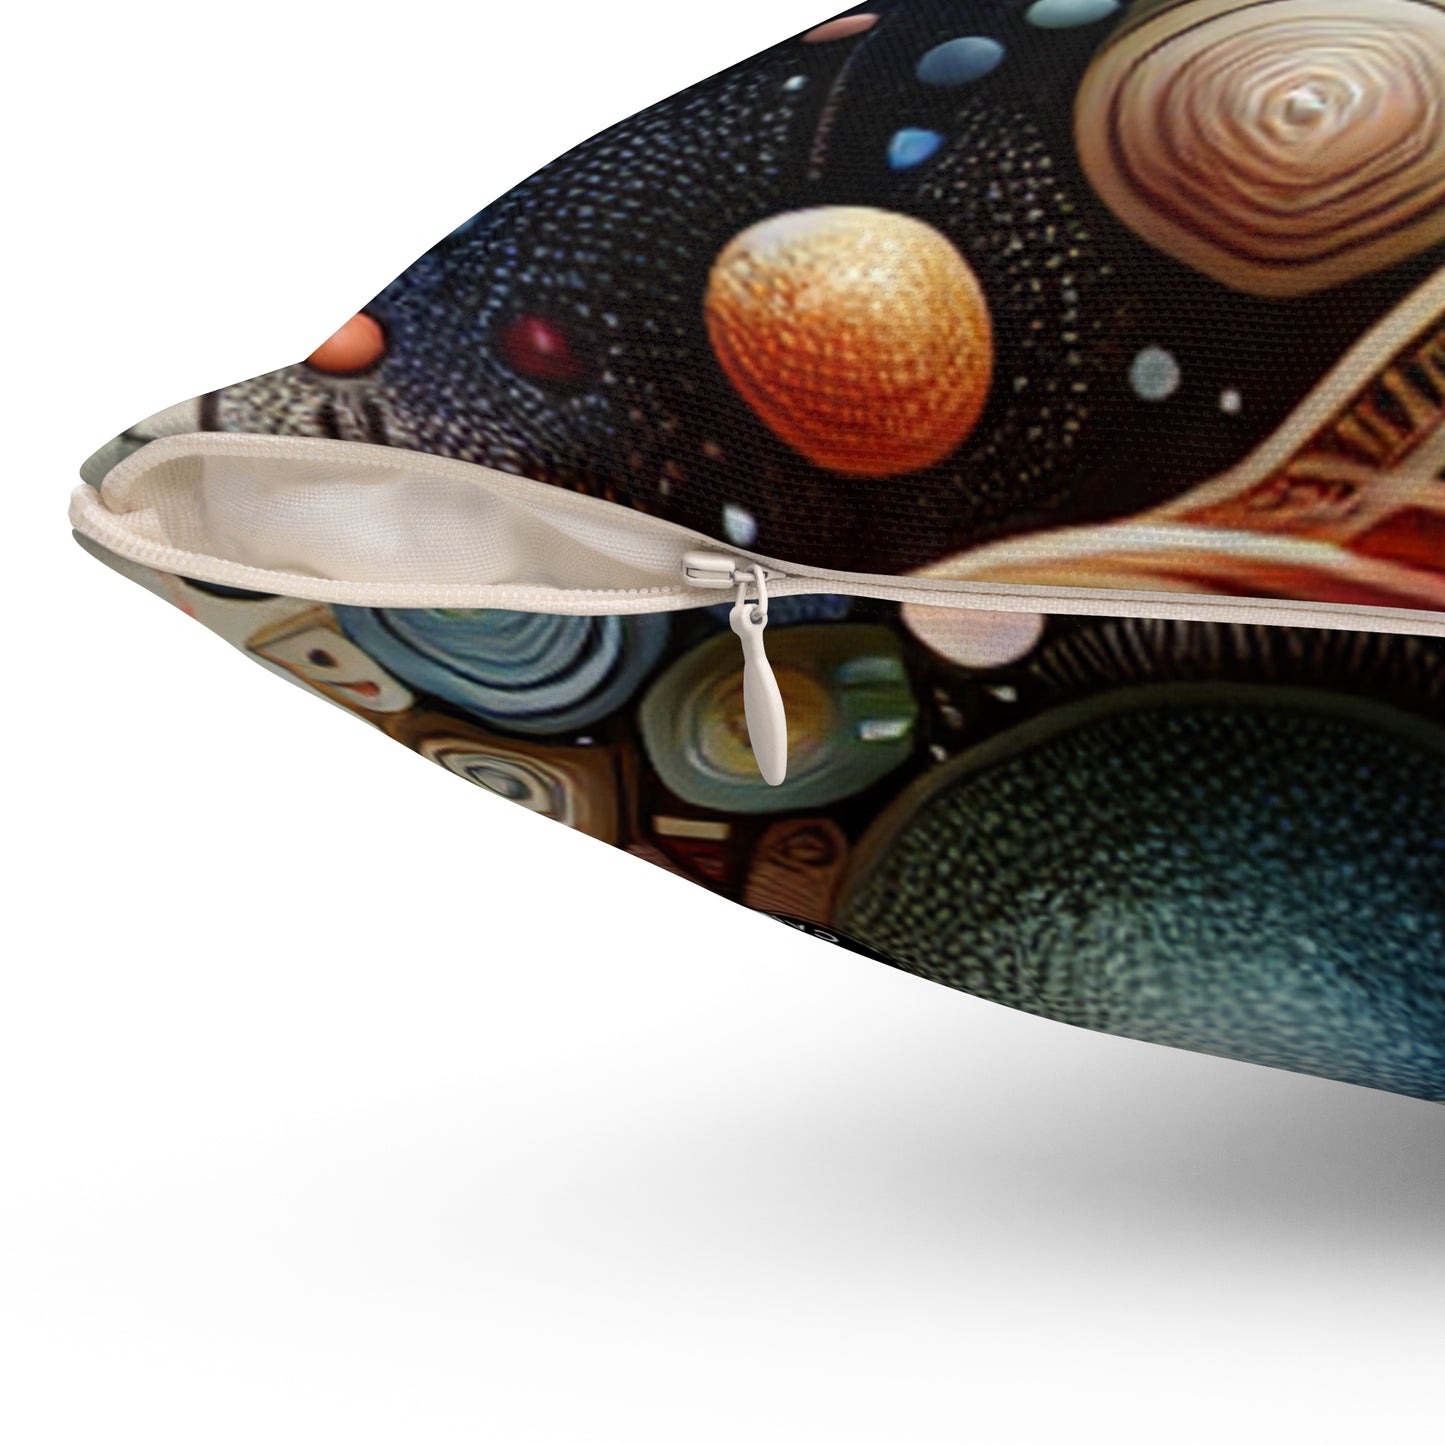 "Bio-Futurisme : Art inspiré des ailes de papillon" - L'oreiller carré en polyester filé Alien Bio Art